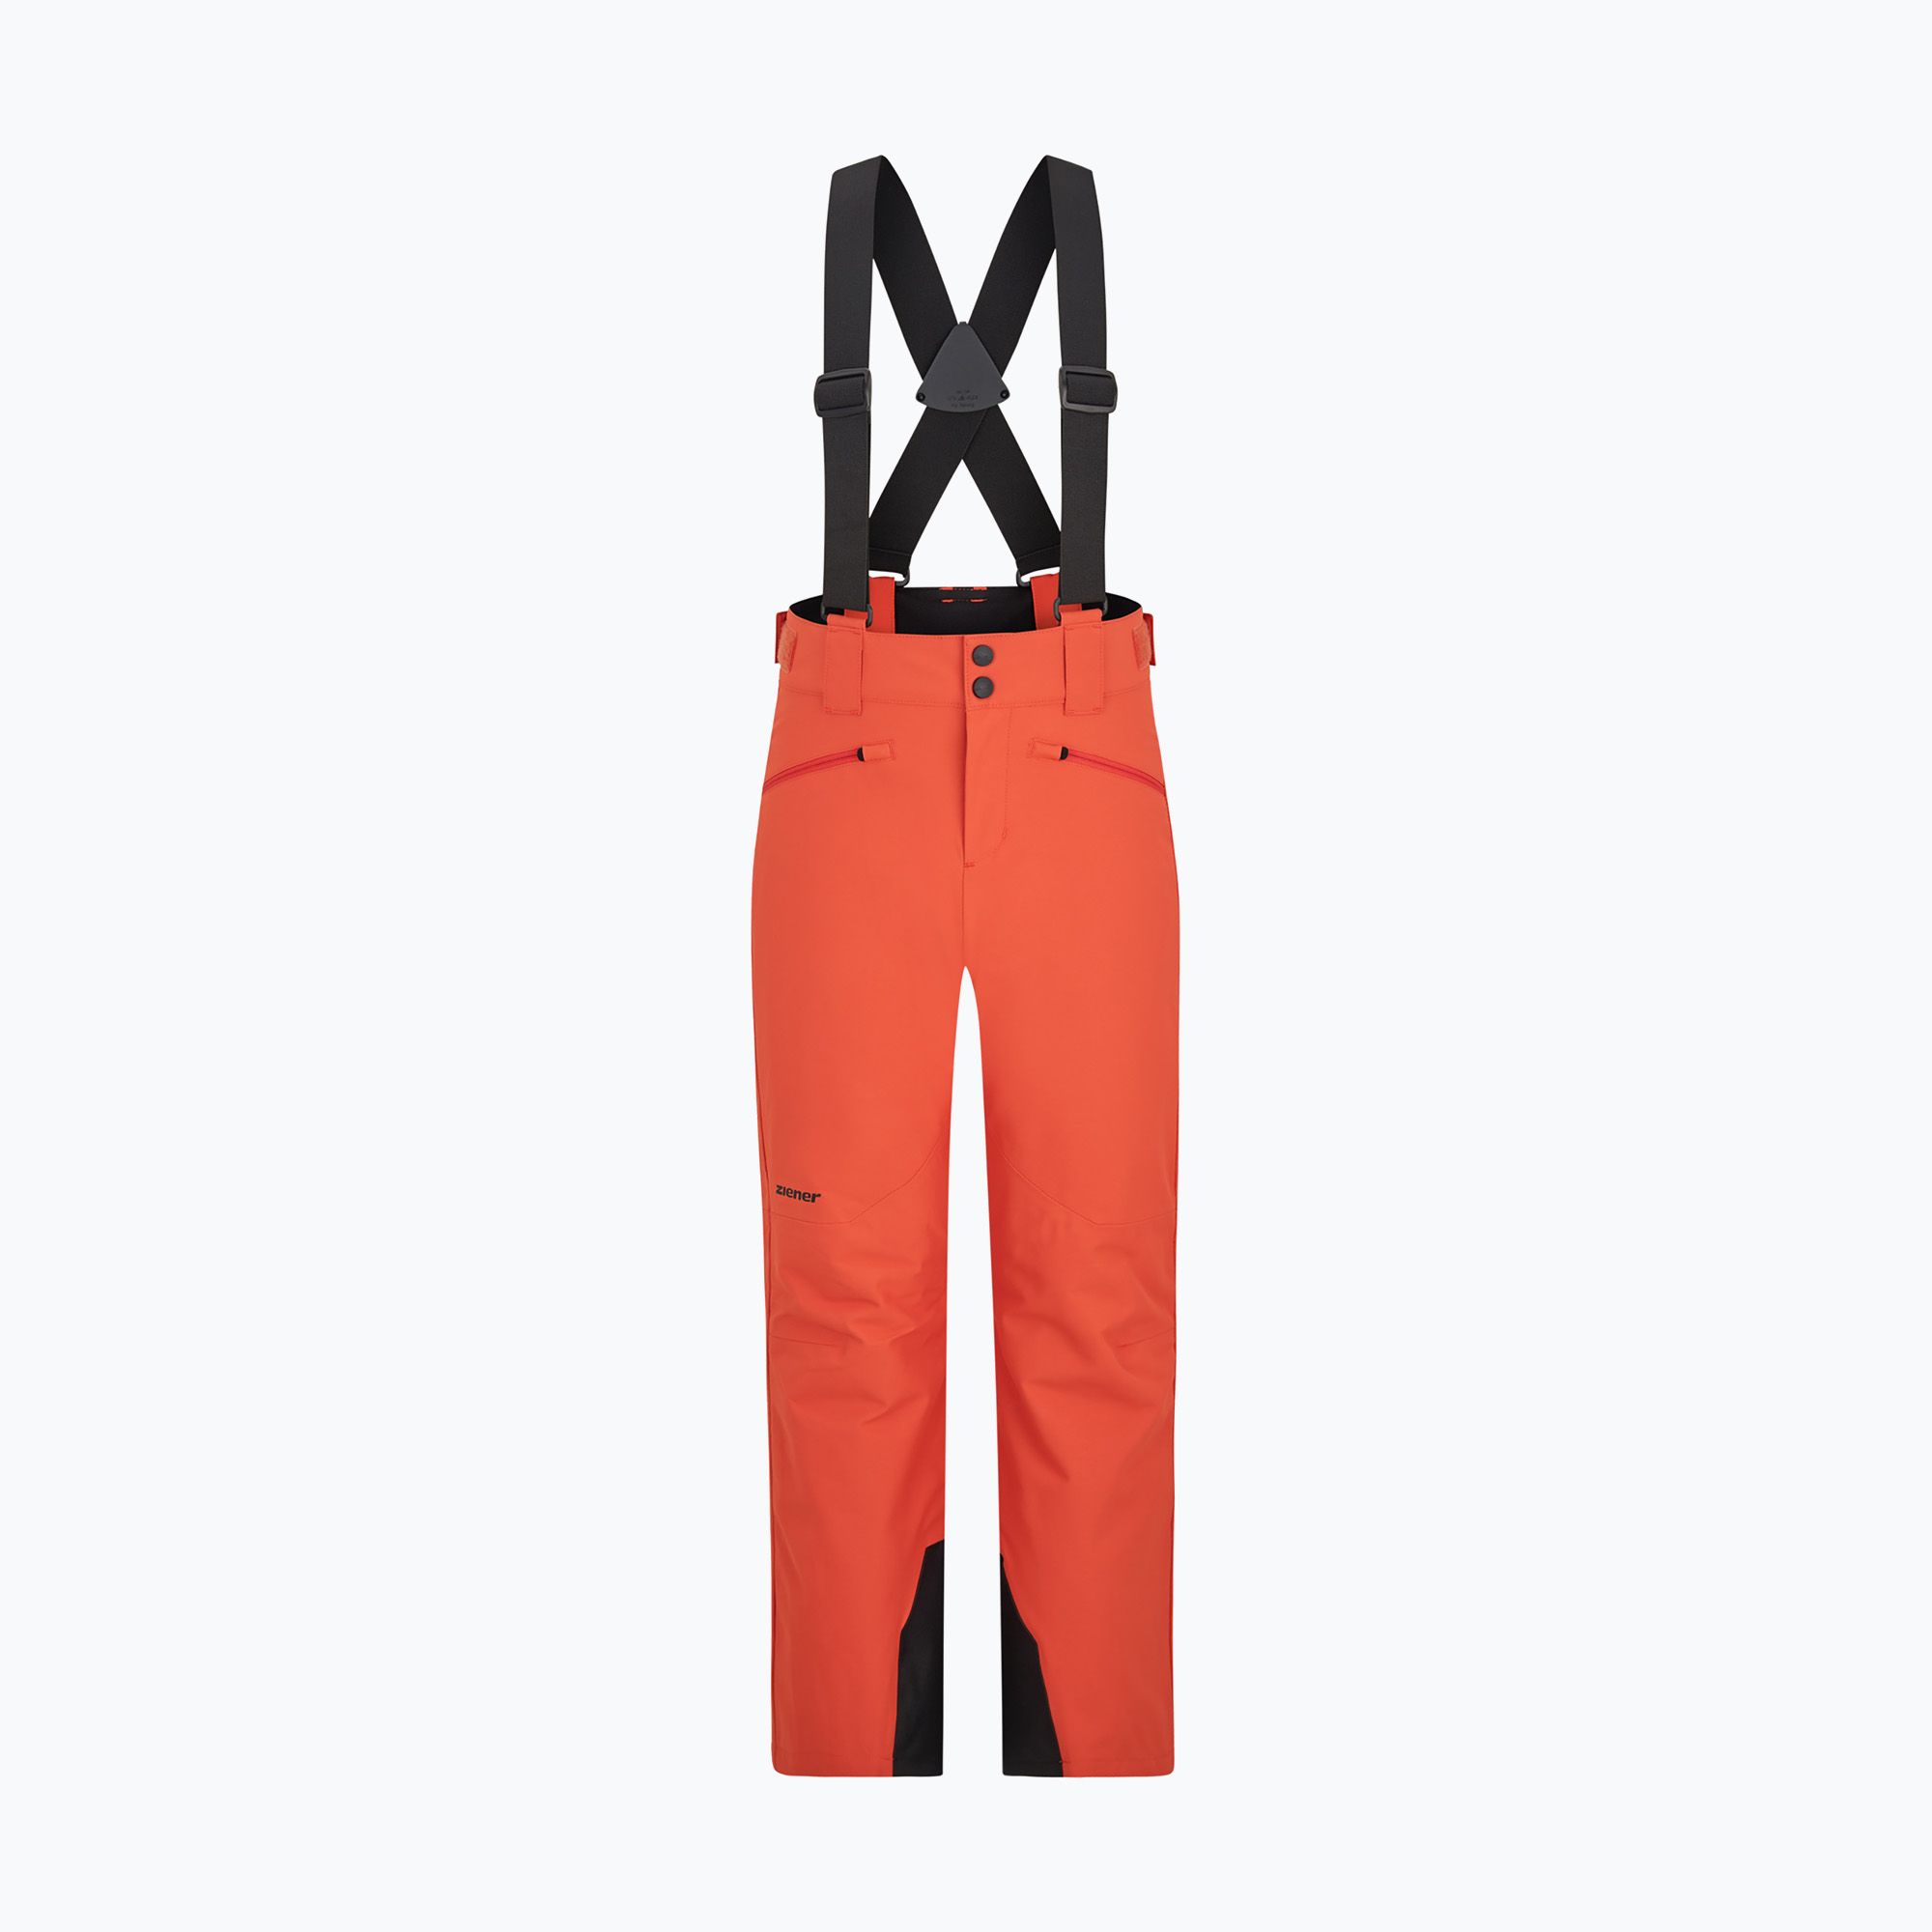 trousers orange children\'s Axi burnt ZIENER ski